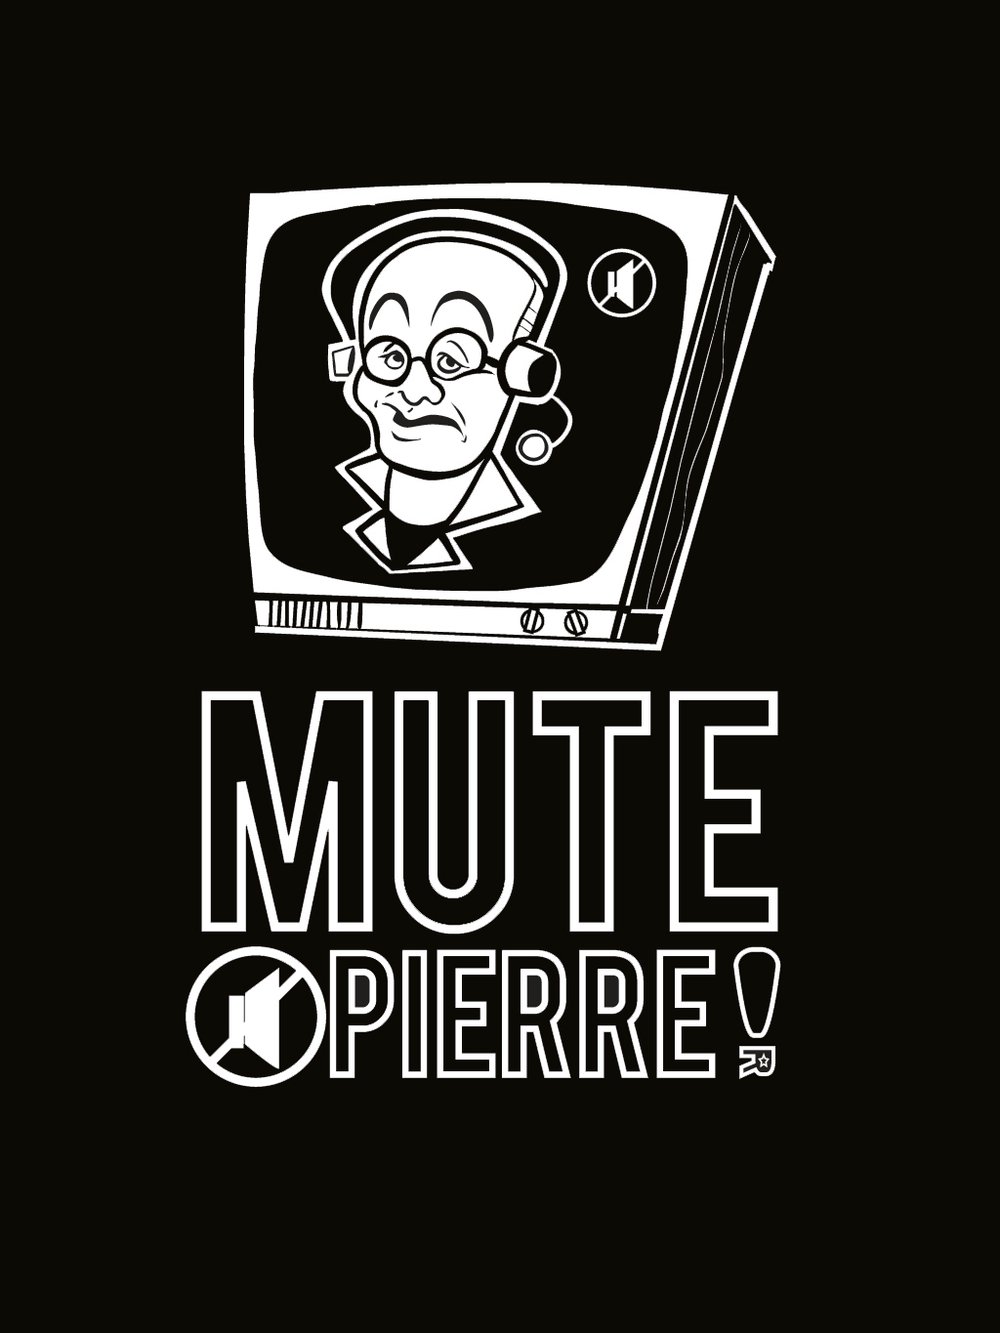 MUTE PIERRE! (MCGUIRE) T-shirt black/red